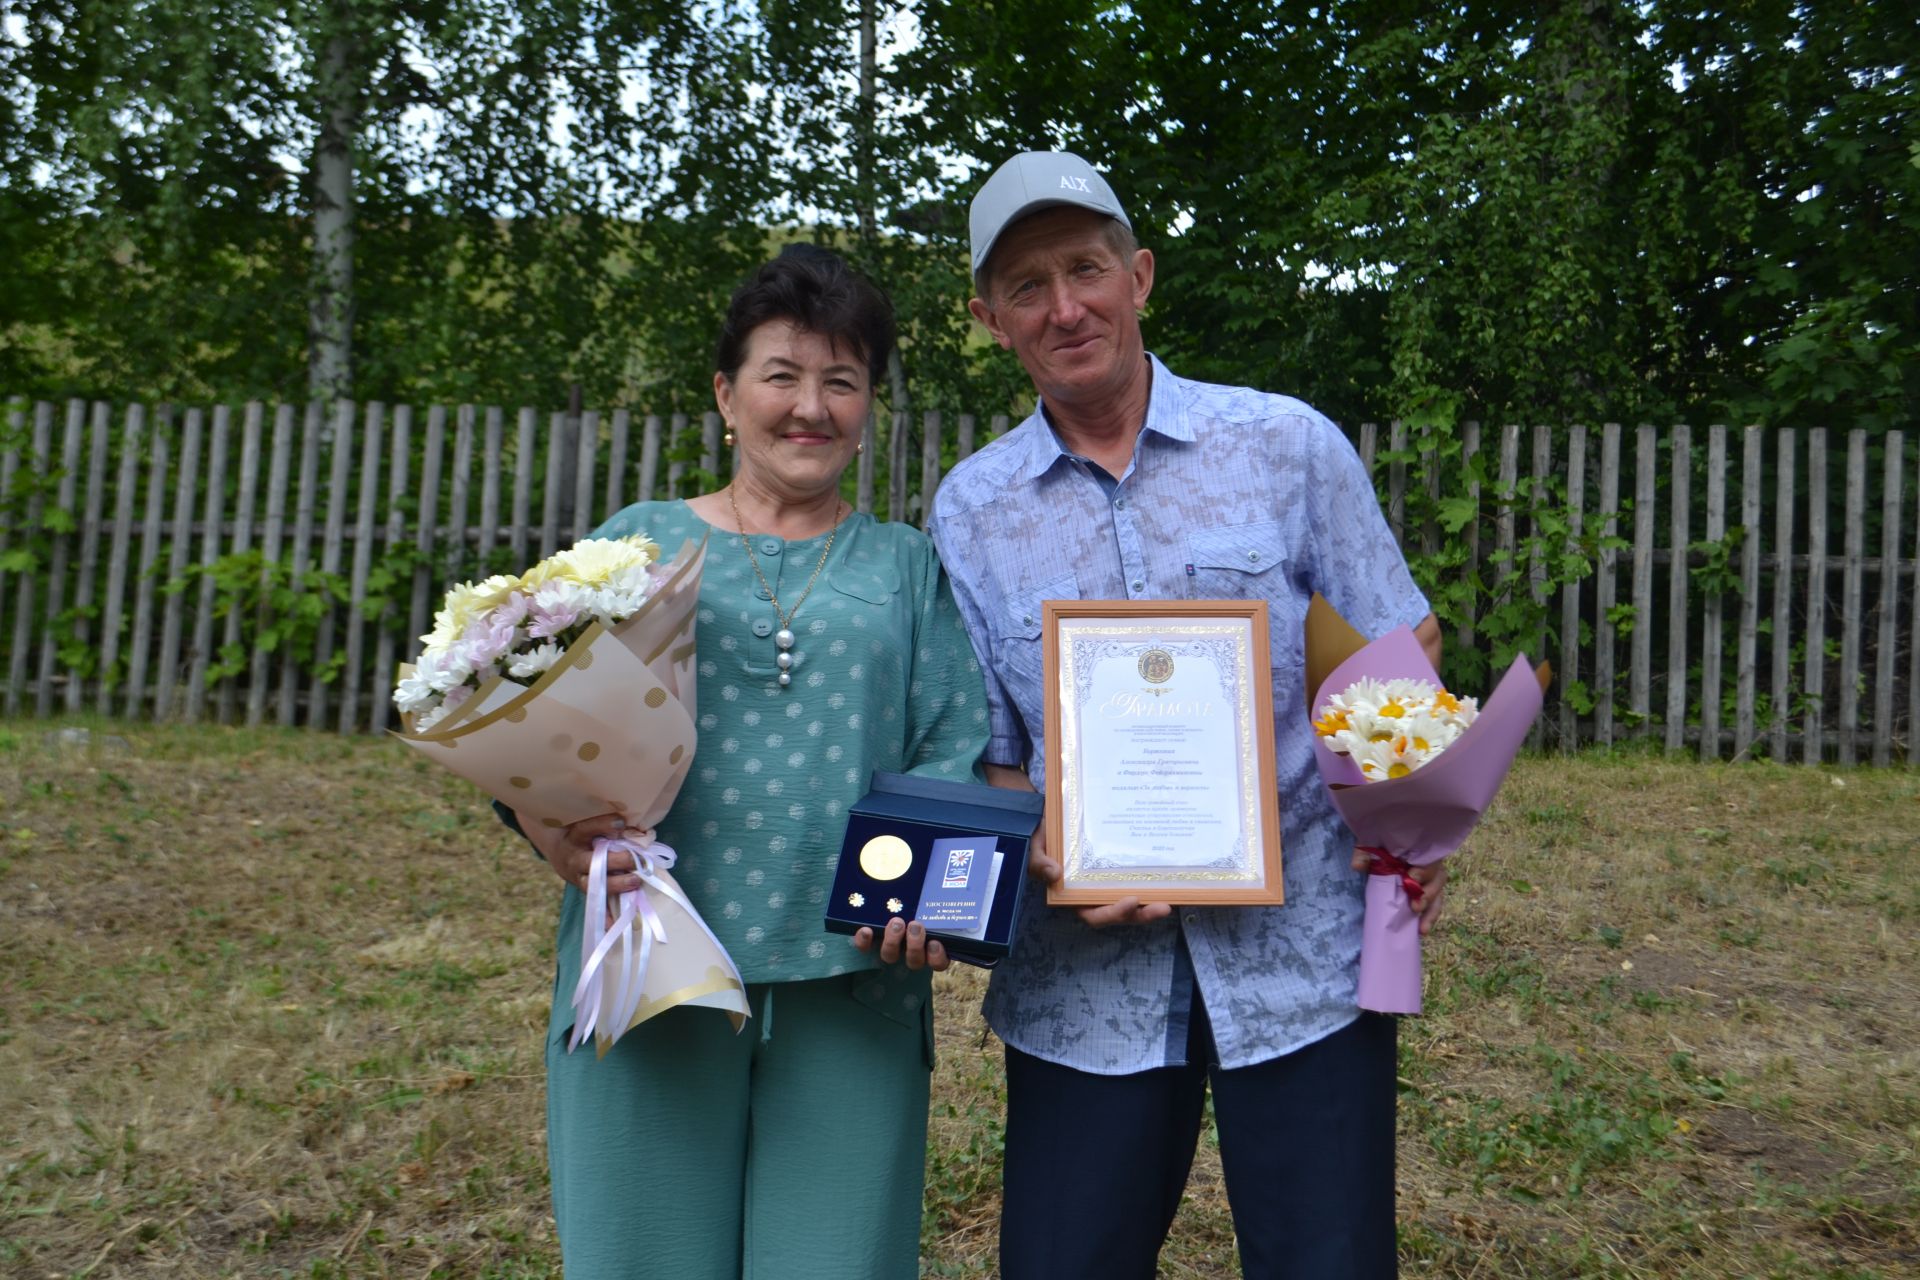 Семье Борисовых из Чулпанихи вручили медаль «За любовь и верность»